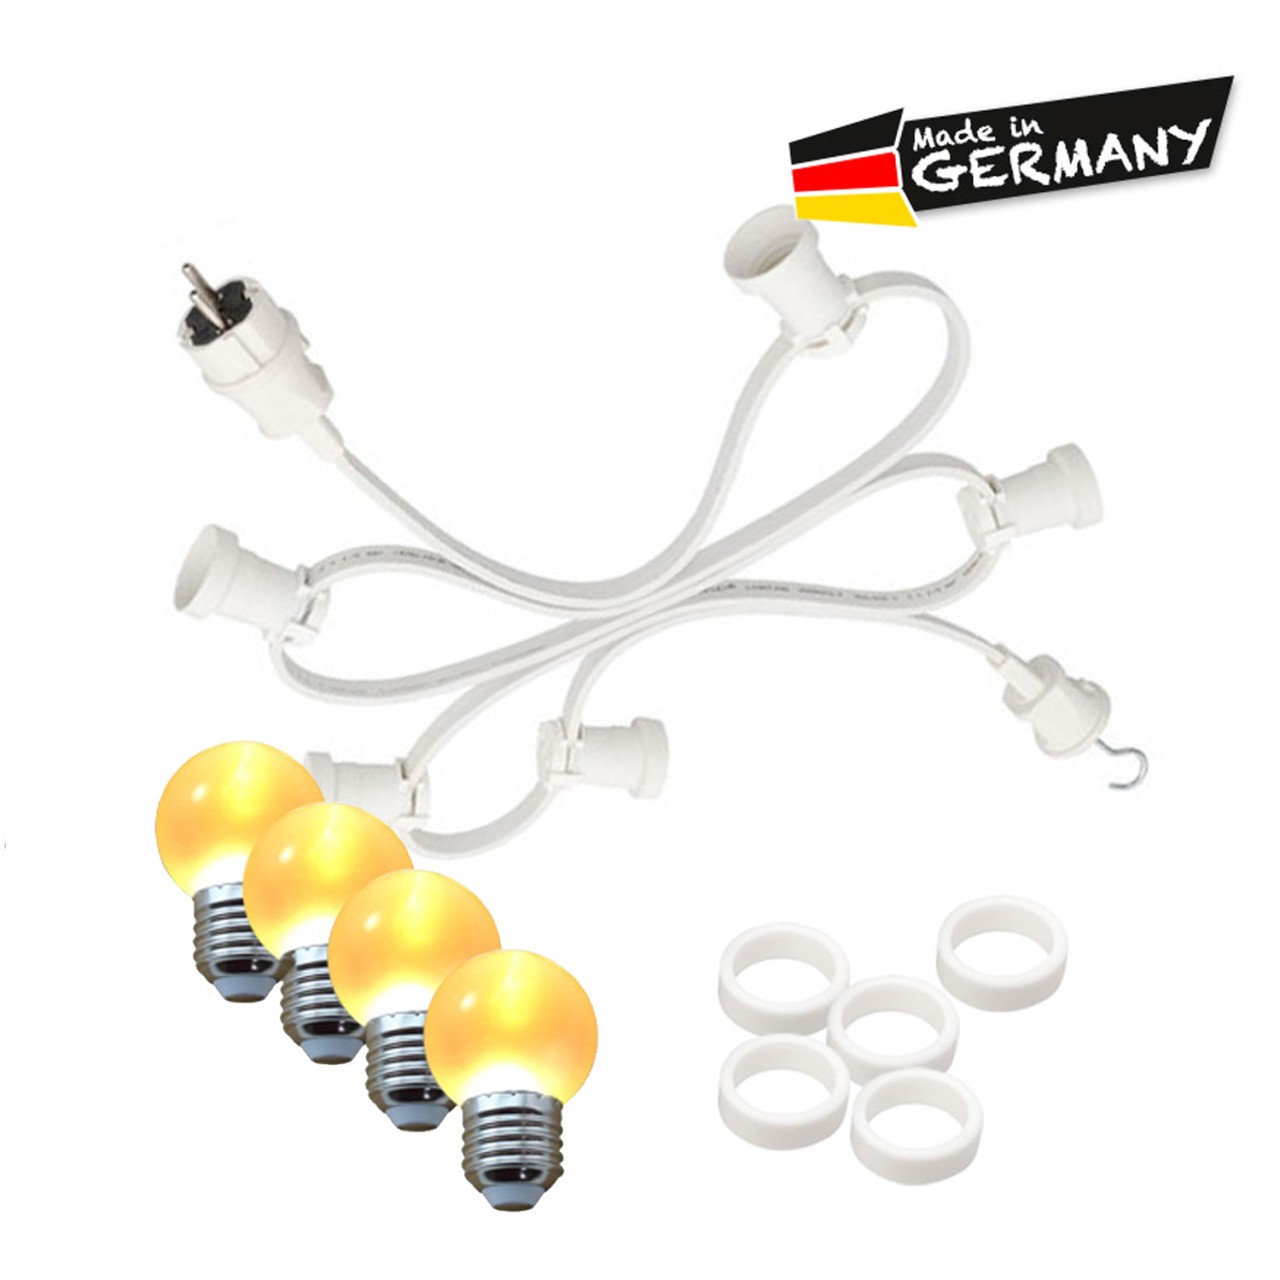 Illu-/Partylichterkette 30m – Außenlichterkette – Made in Germany -…